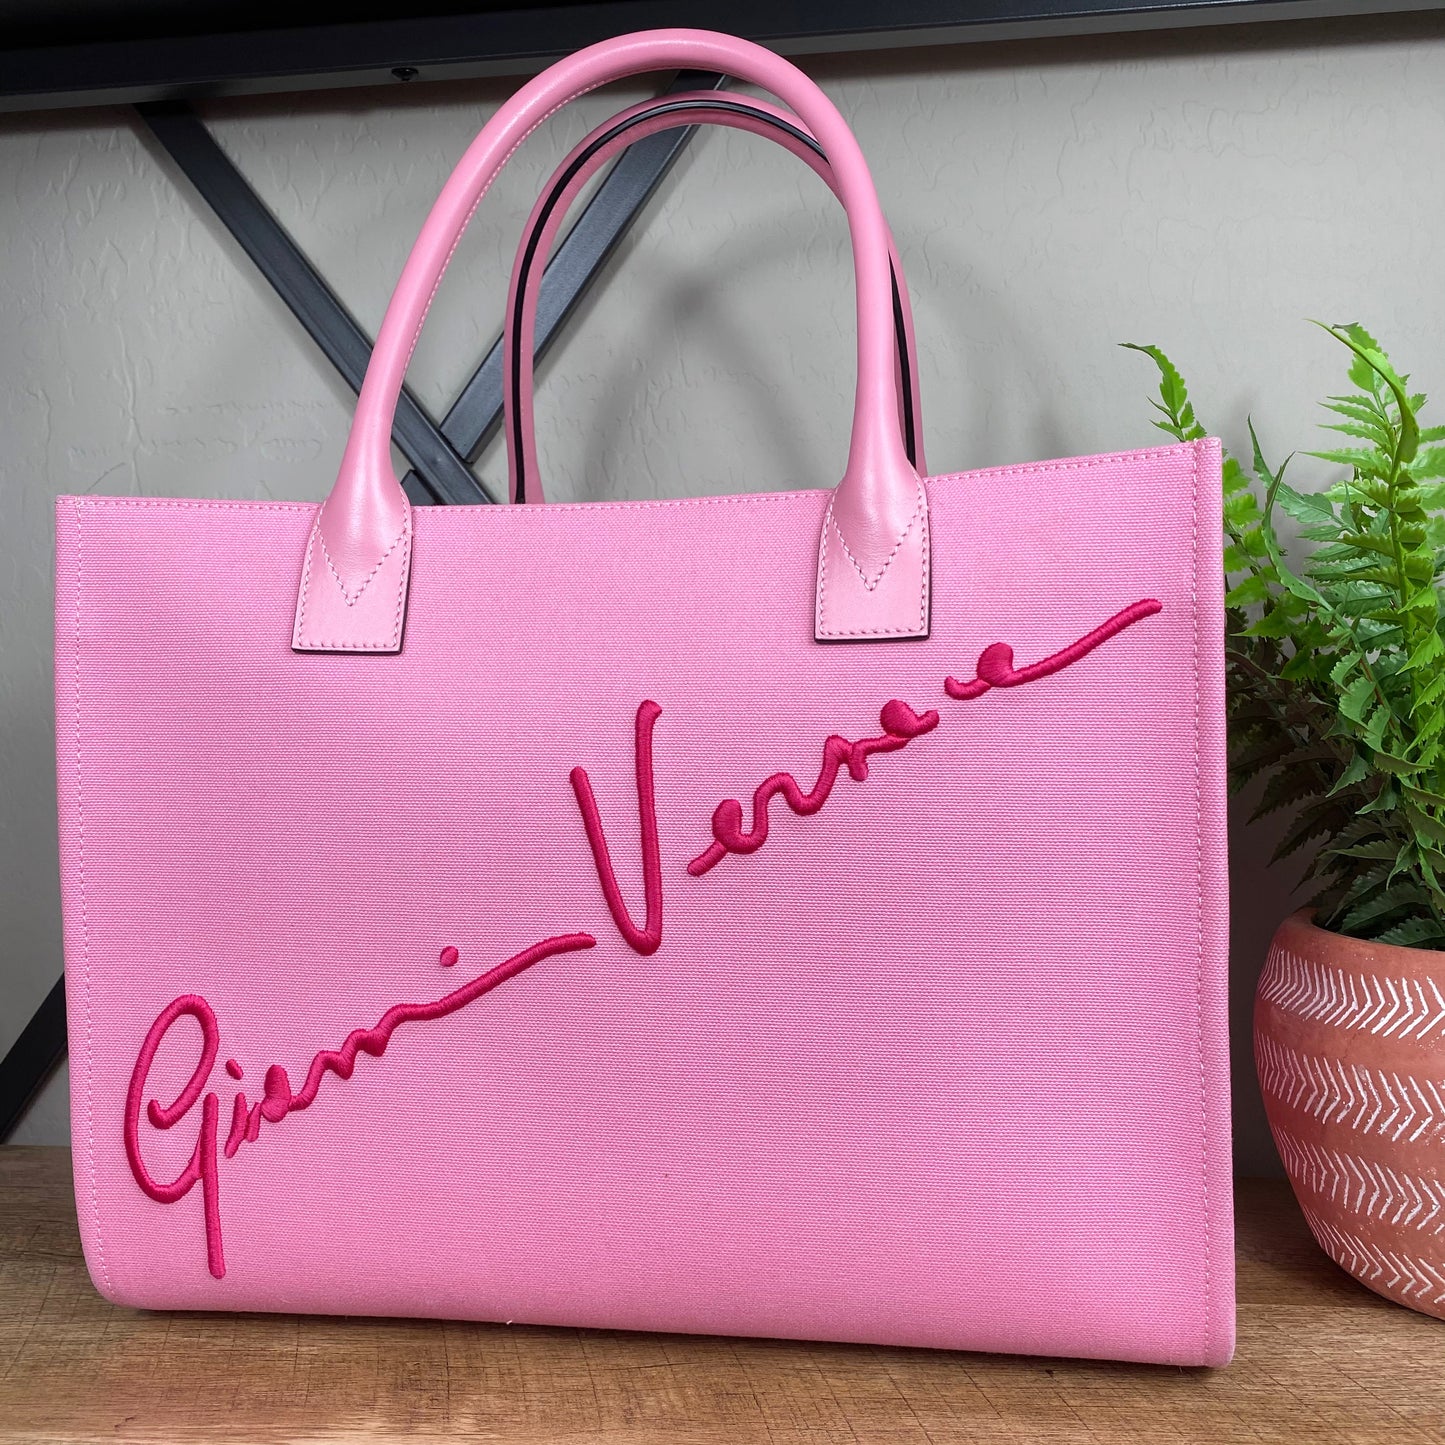 Gianni Versace Cabas GV Signature Tote